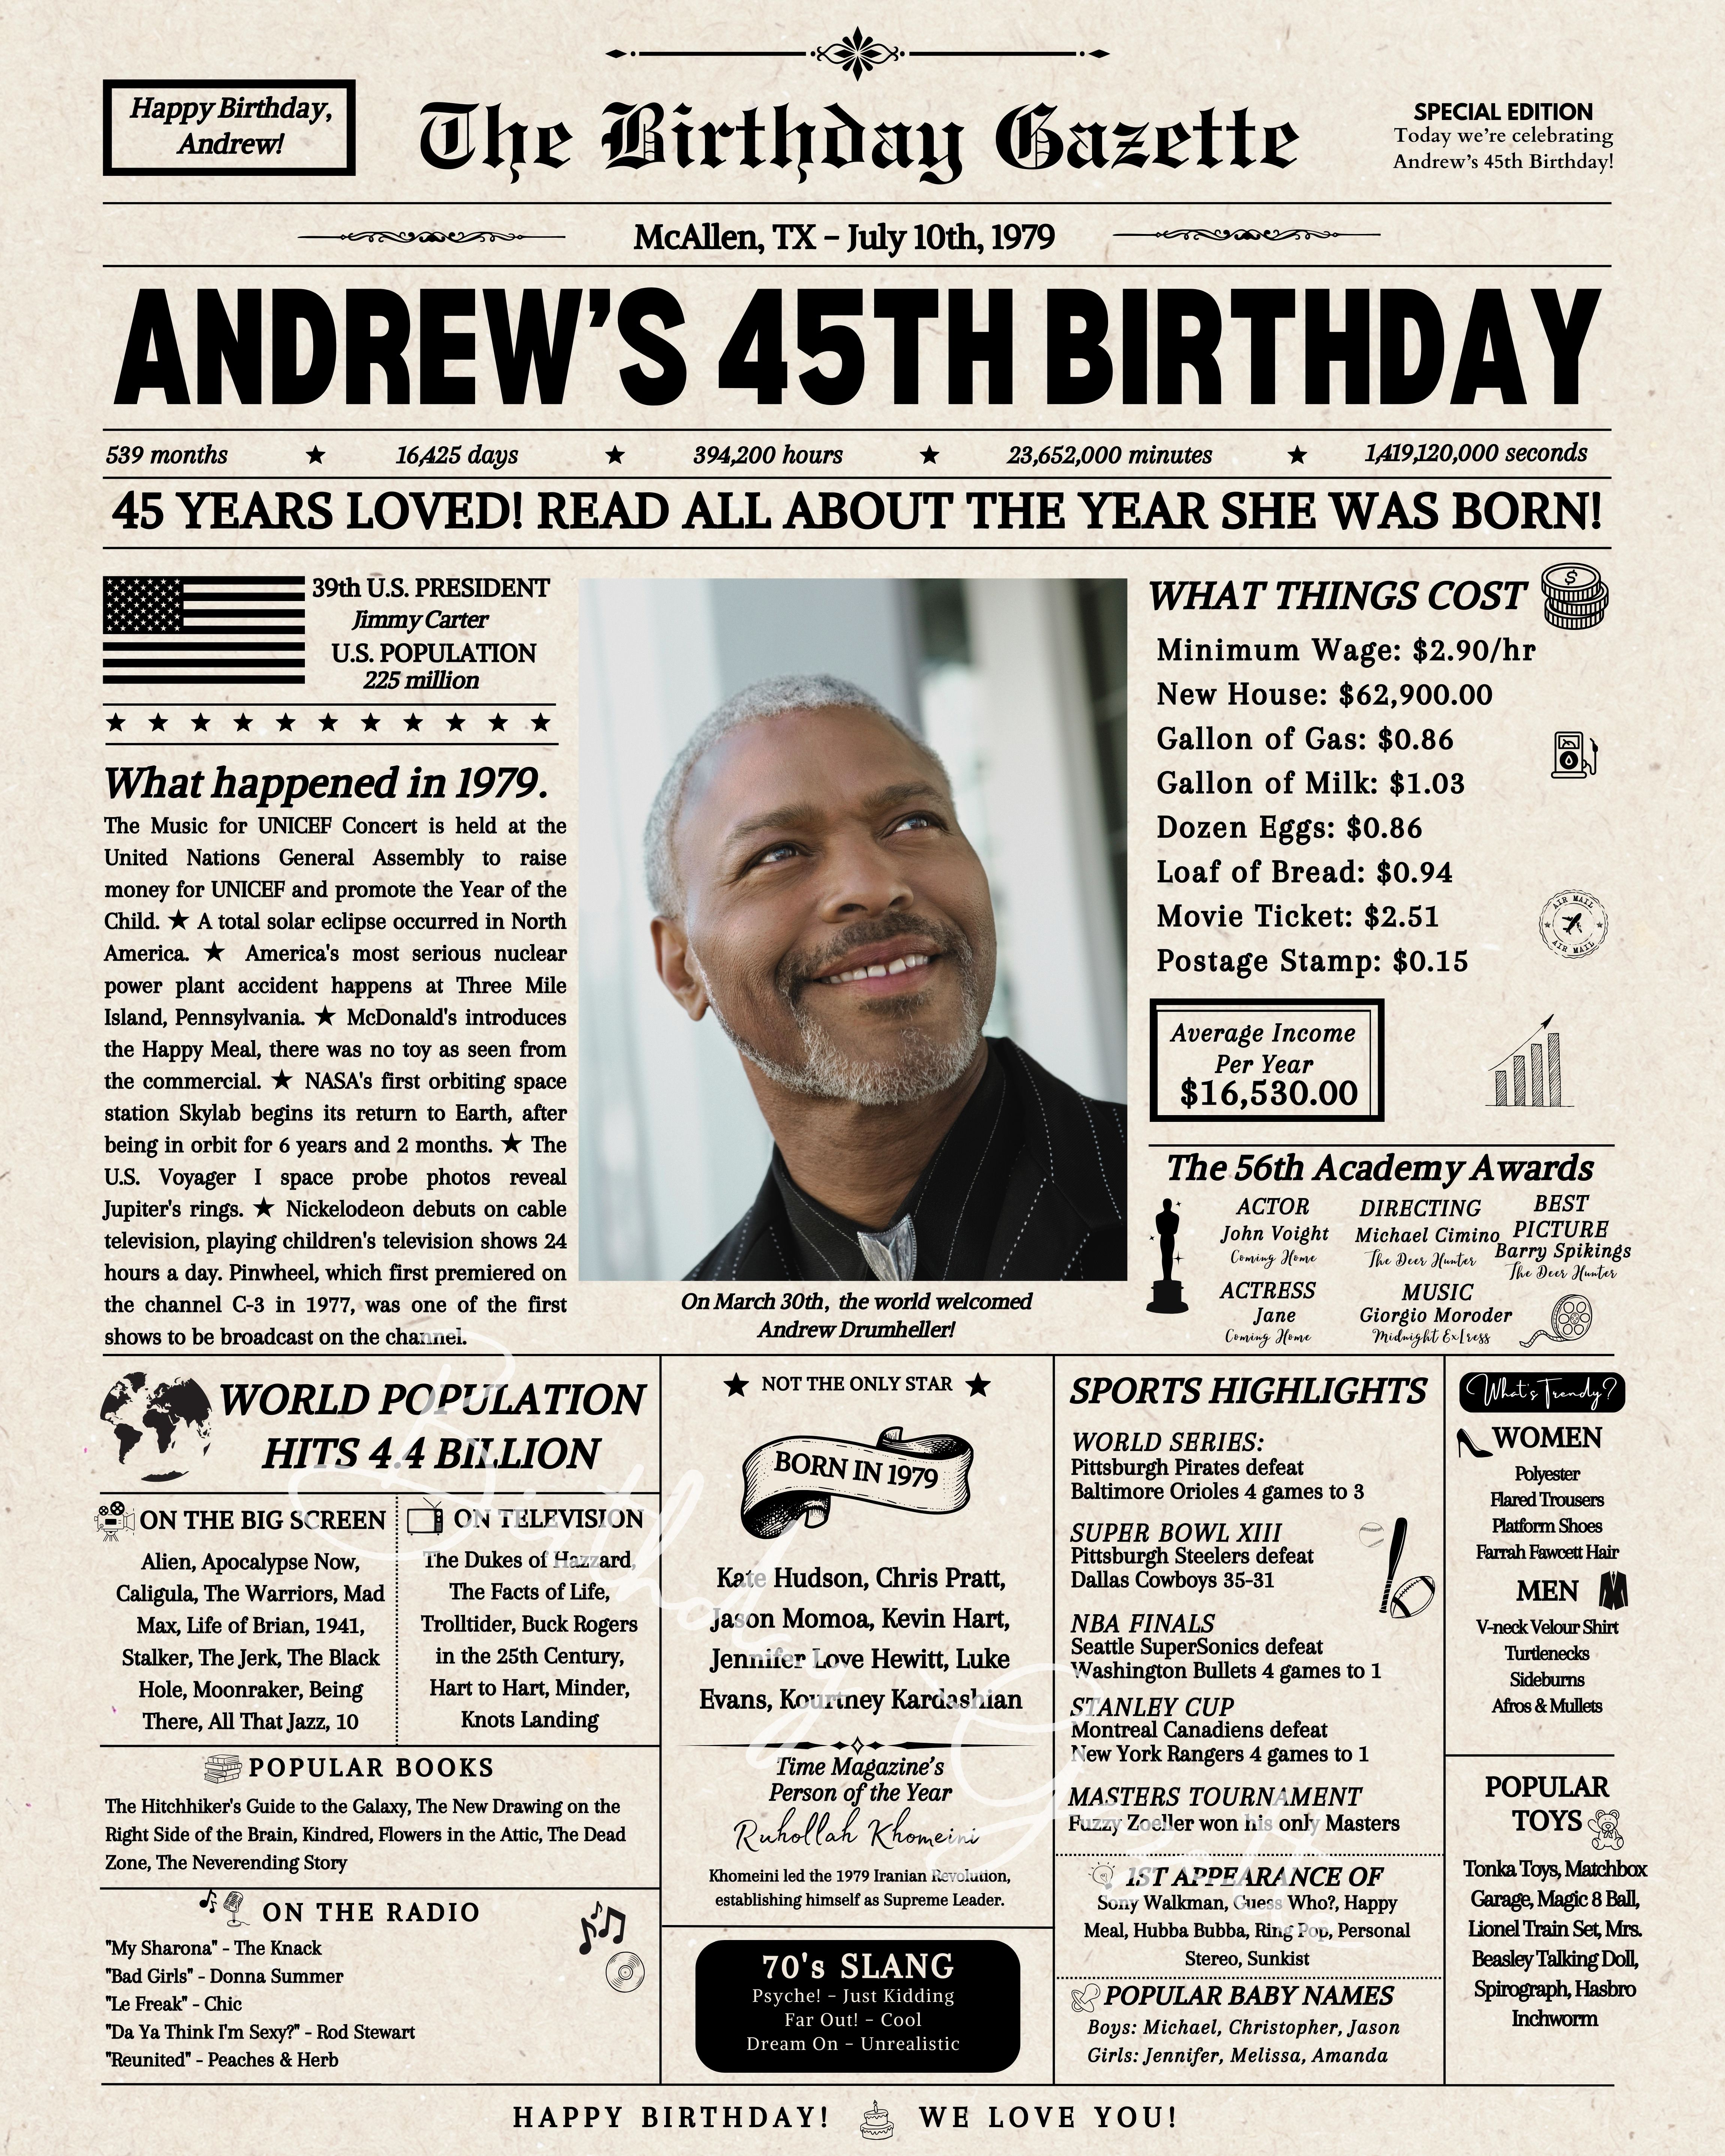 45th Birthday Newspaper